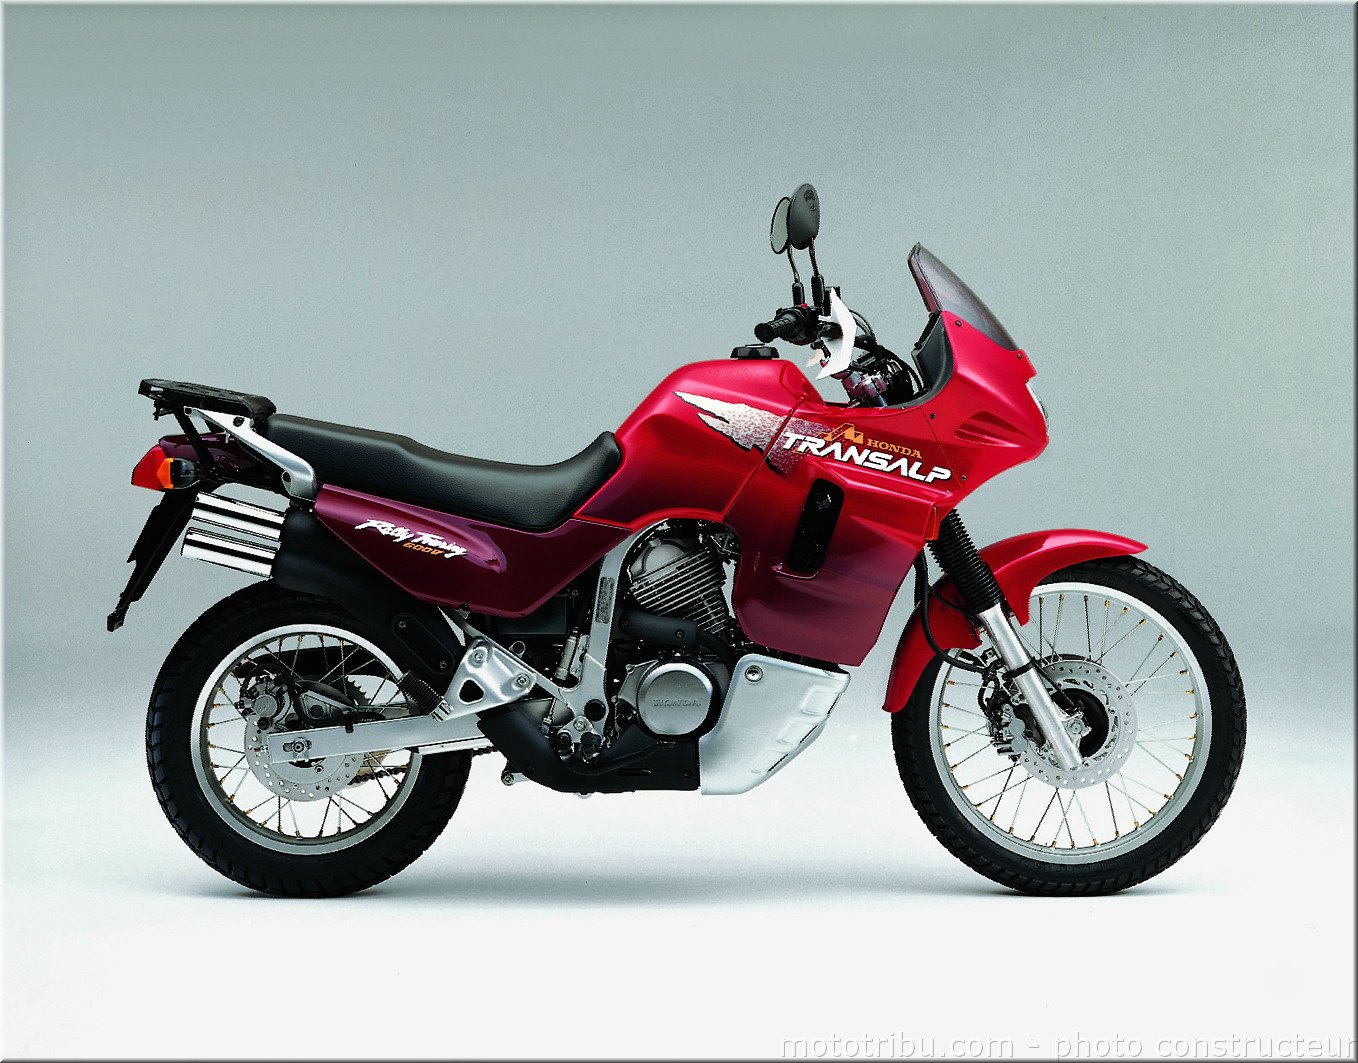 Обзор мотоцикла honda xl600 transalp